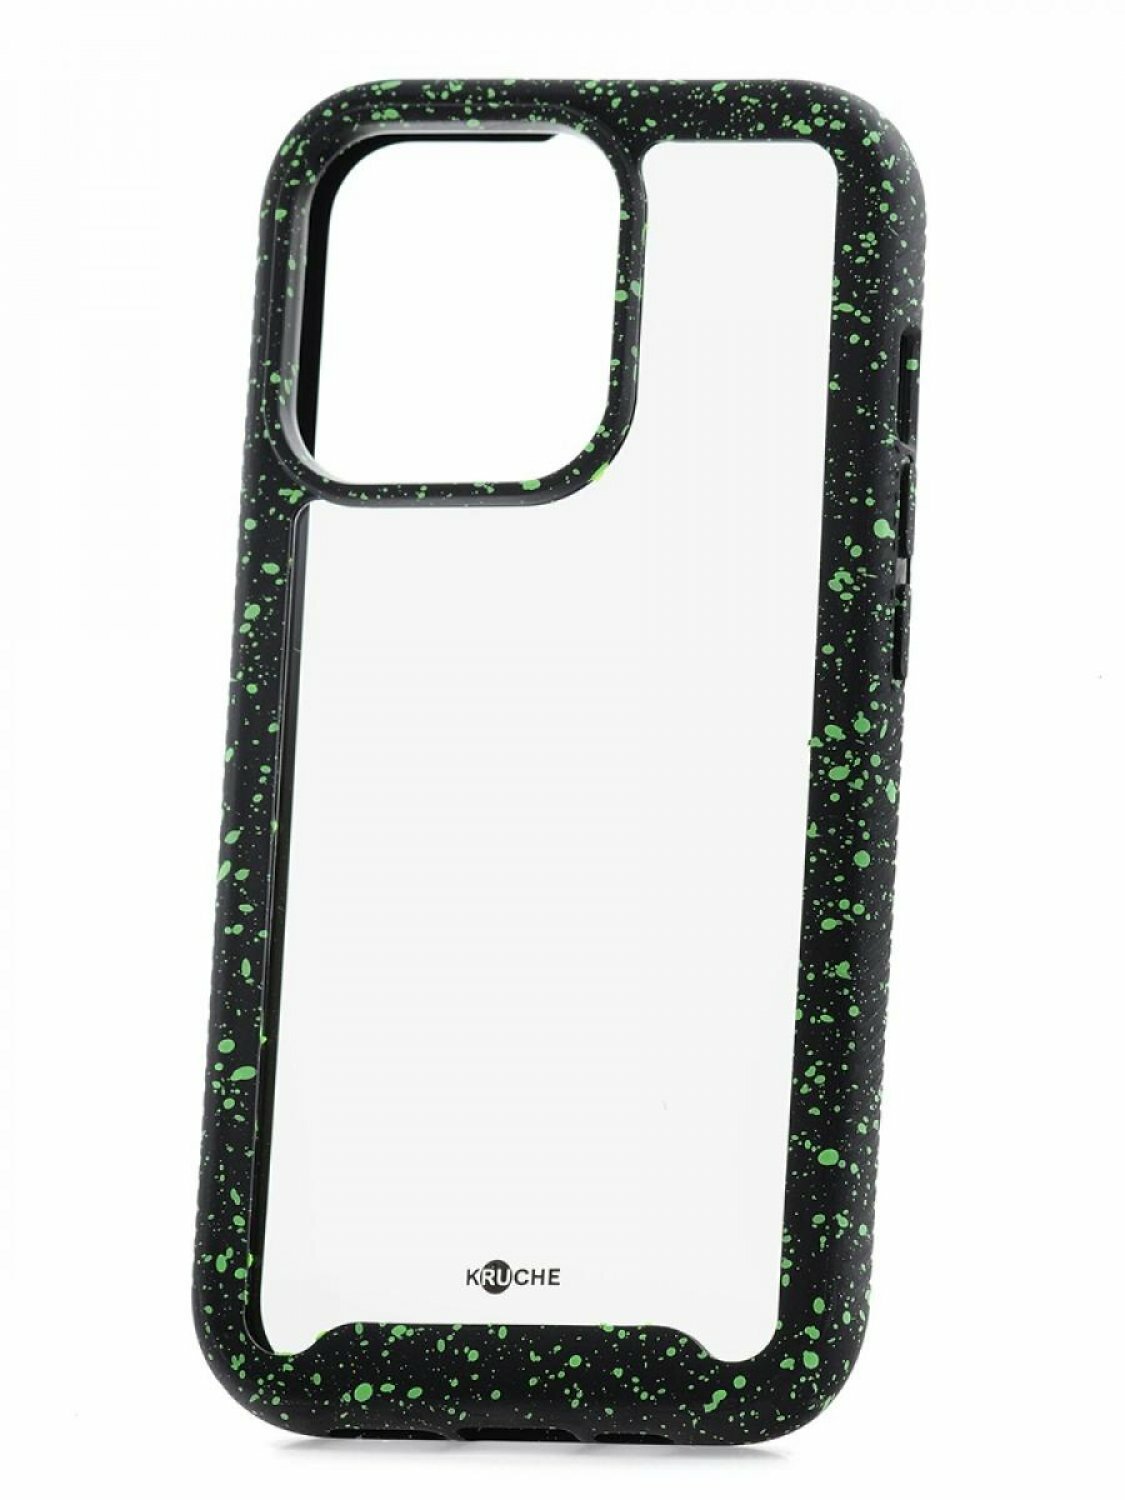 Чехол для iPhone 12 Pro Max Kruche Armor Splash Black, противоударная накладка, защитный силиконовый бампер 360, прозрачный кейс, защита камеры